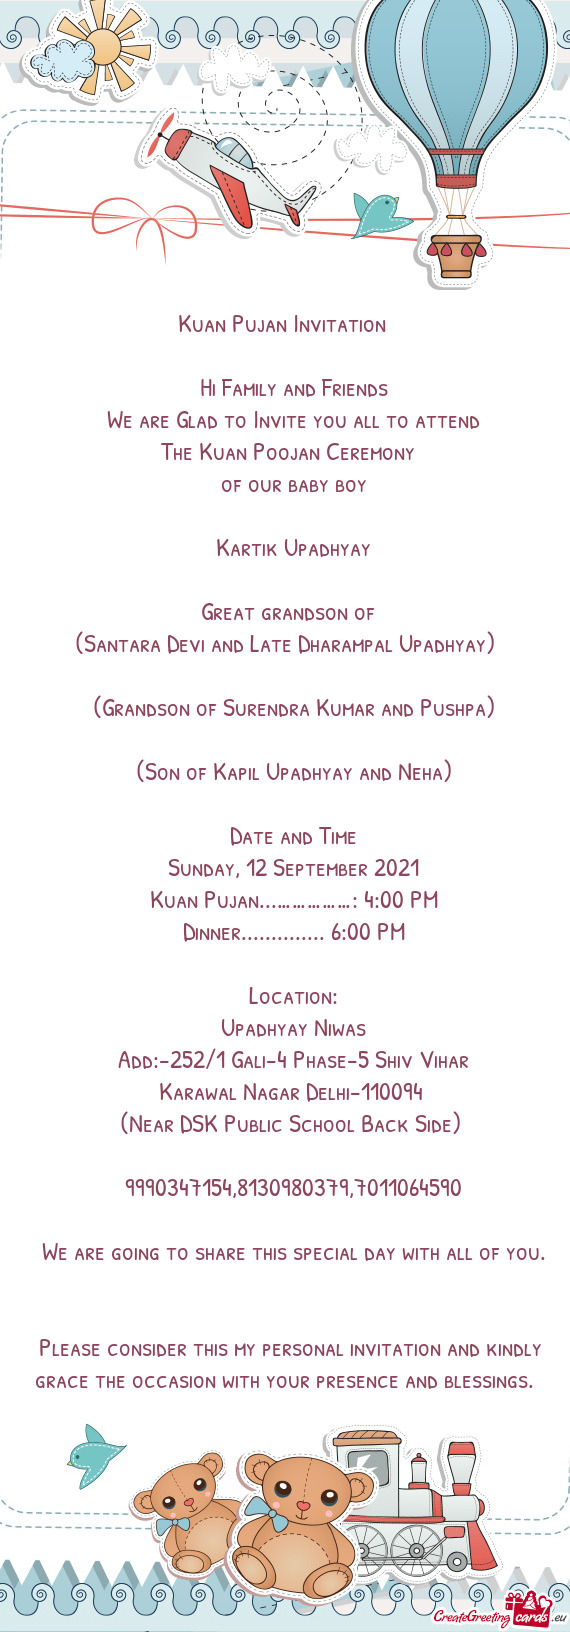 (Santara Devi and Late Dharampal Upadhyay)